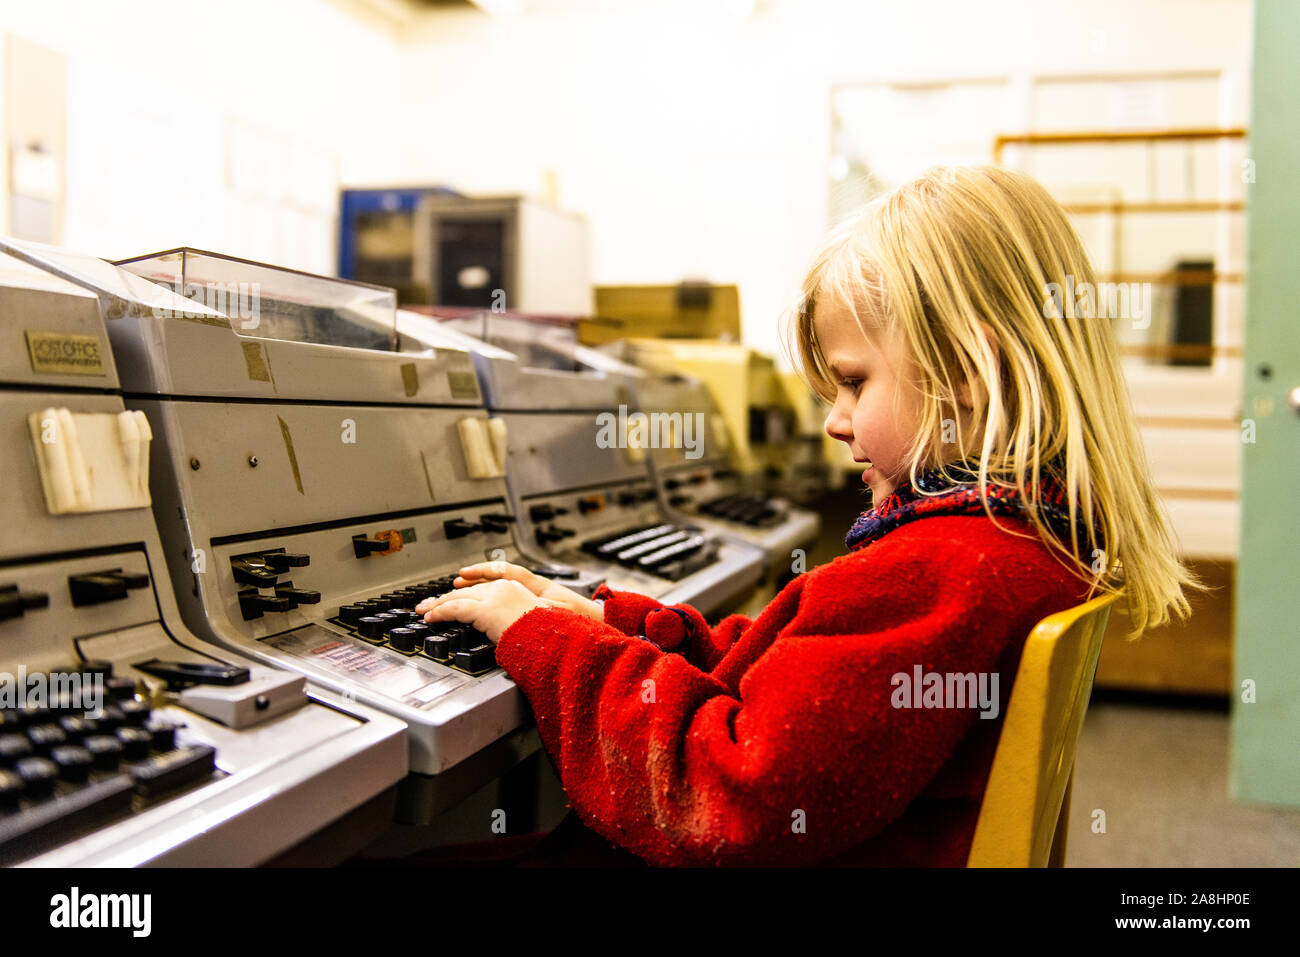 Ein süßes kleines Mädchen im roten Mantel sitzt an einer altmodischen Computer Terminal am Kelvedon Hatch secret Nuclear Bunker Museum, Kriegsvorbereitungen, Kalter Krieg Stockfoto